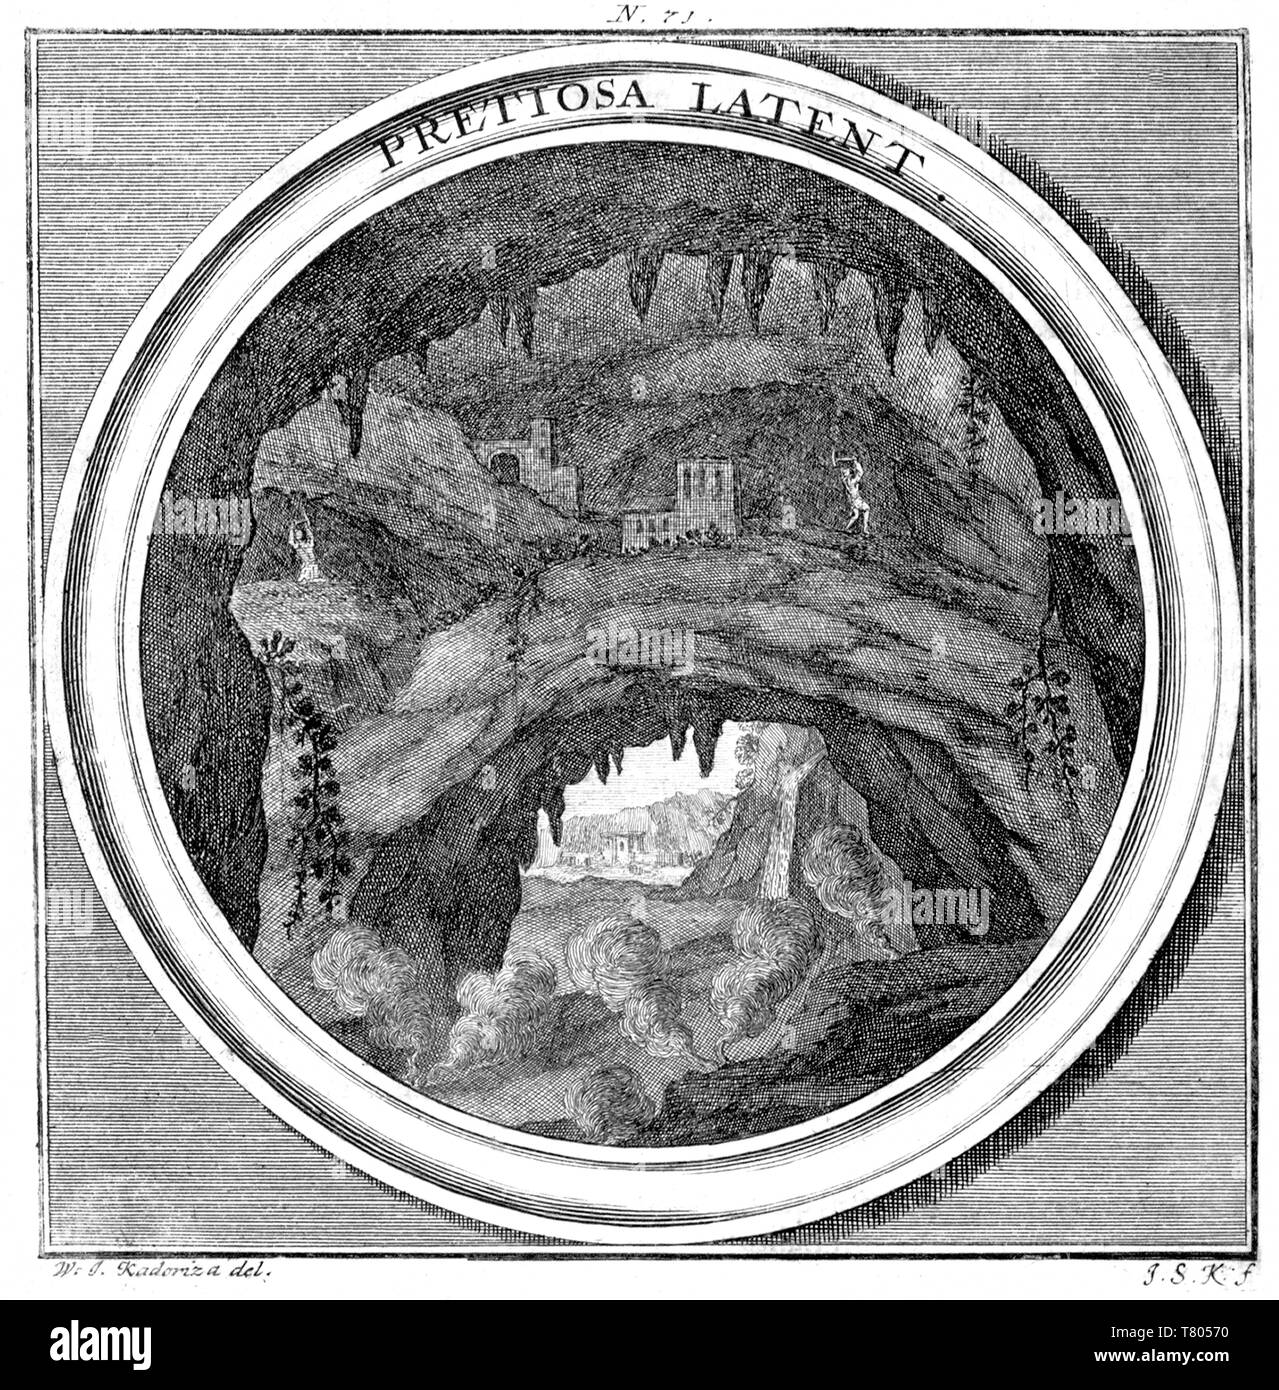 Meteorologia, exploitation minière, 1709 Banque D'Images